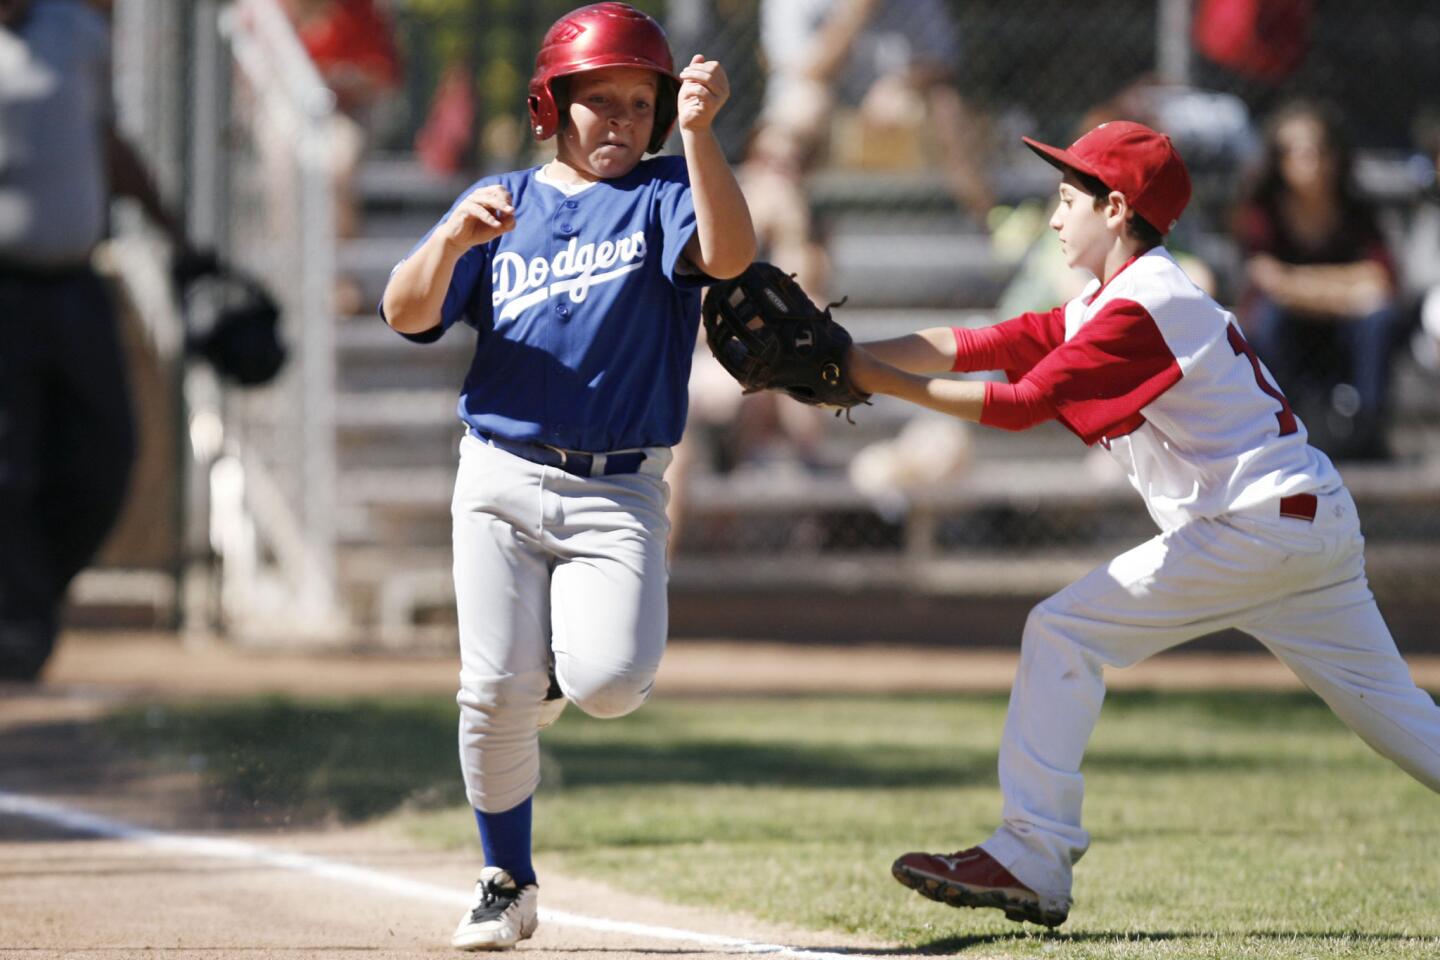 Burbank vs. Tujunga boy's baseball major league